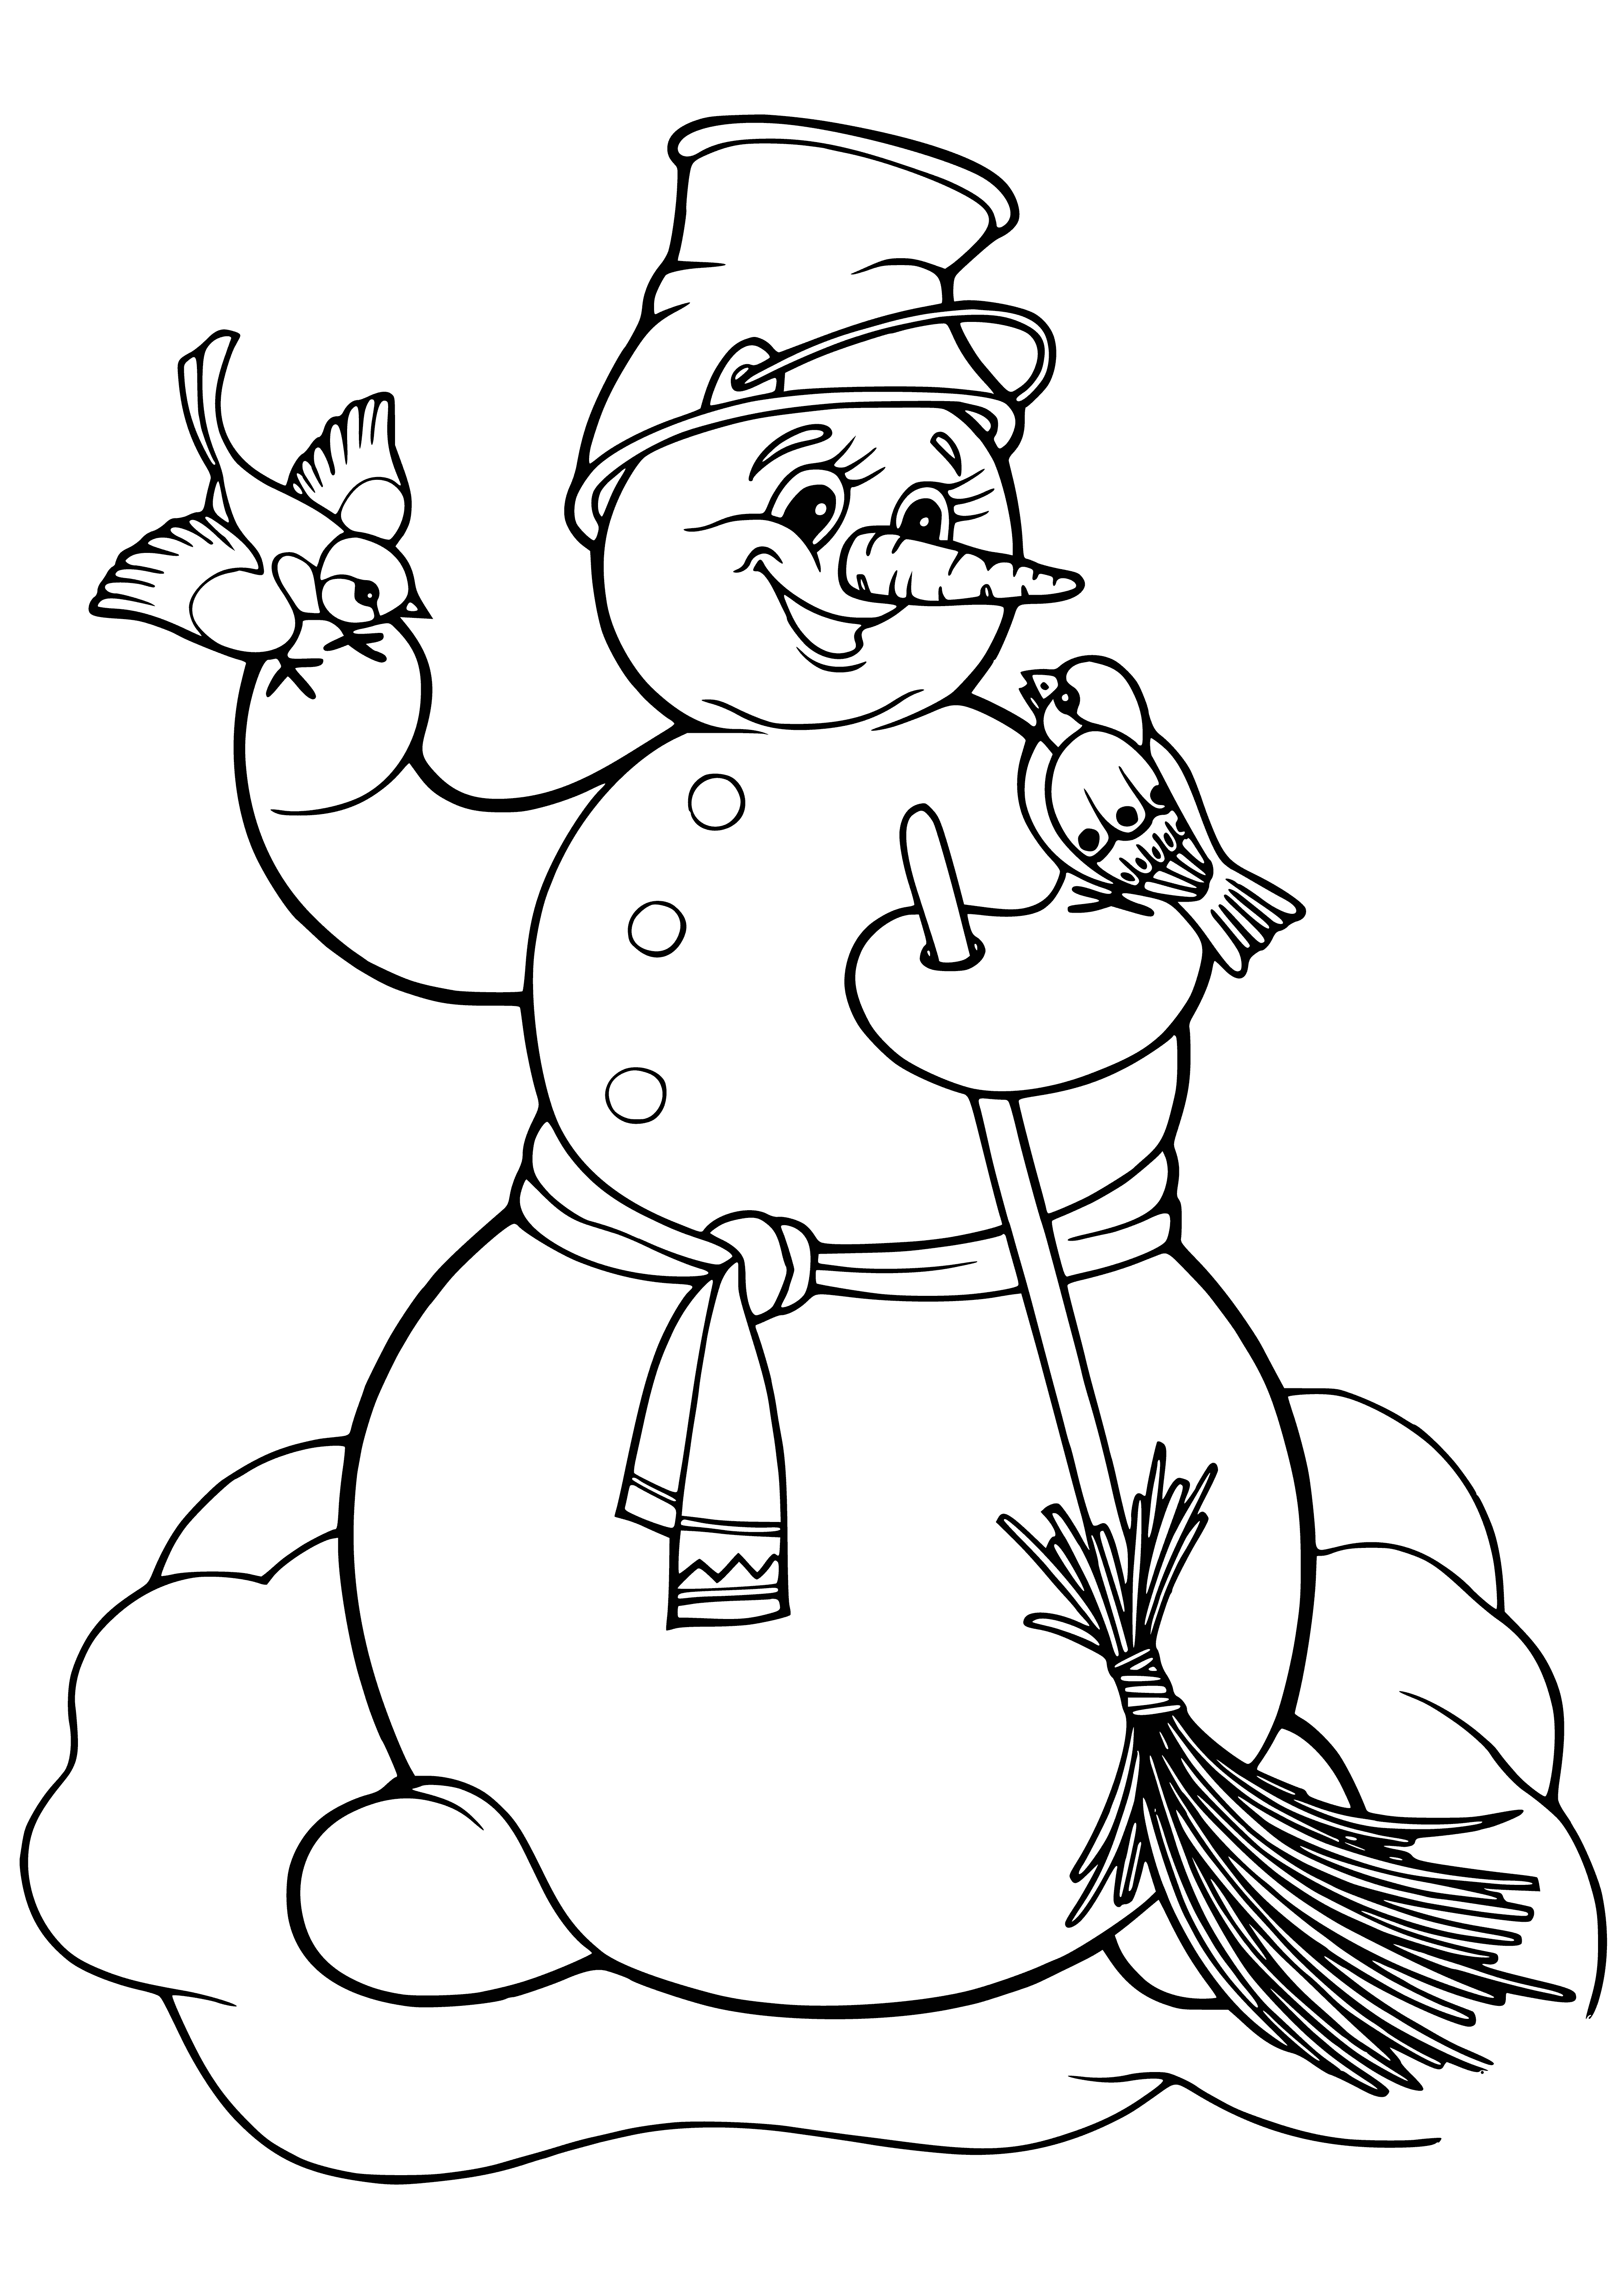 bonhomme de neige coloriage